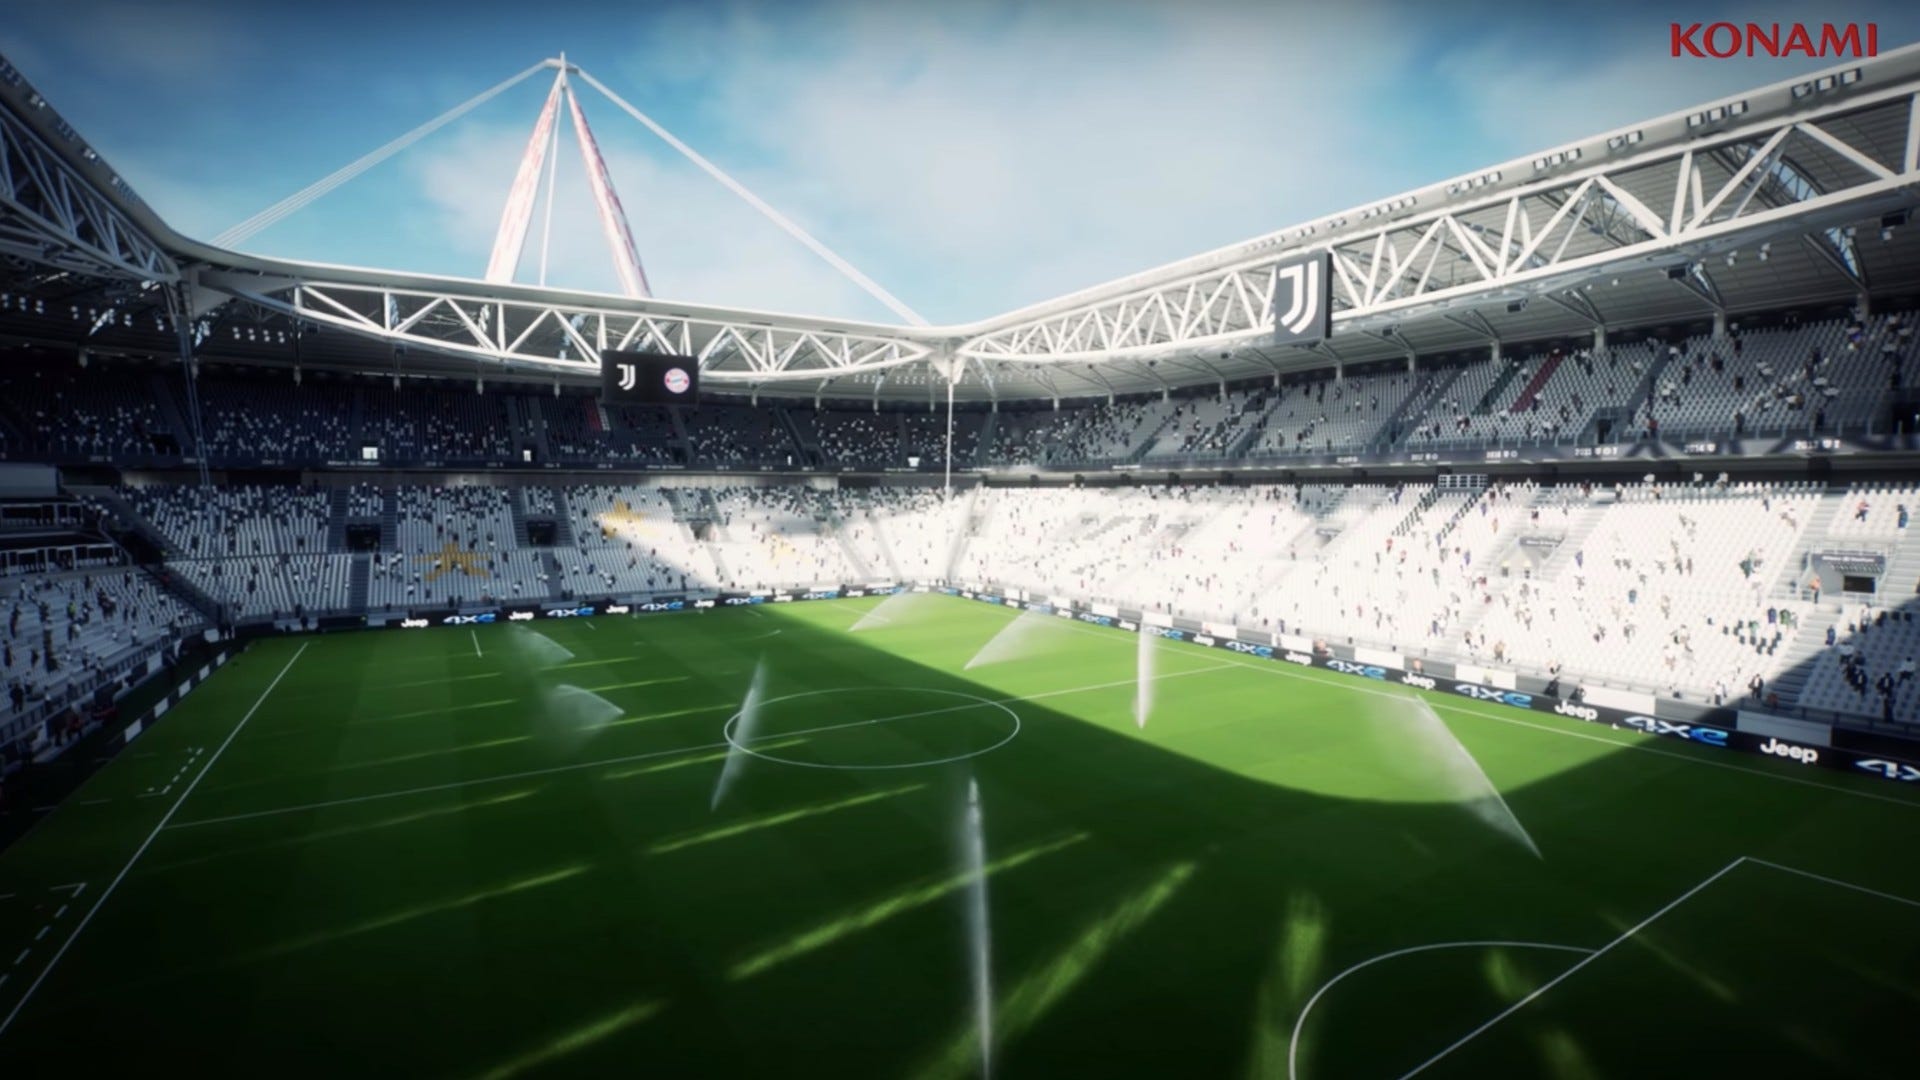 Allianz Stadium - Đến với Allianz Stadium, bạn sẽ được chiêm ngưỡng thành tích lịch sử của đội bóng Juventus và cảm nhận được sự cổ kính và hung dữ bao trùm sân bóng này. Hãy cùng trải nghiệm cảm giác đắm chìm trong không gian của Allianz Stadium qua những hình ảnh sống động nhất.